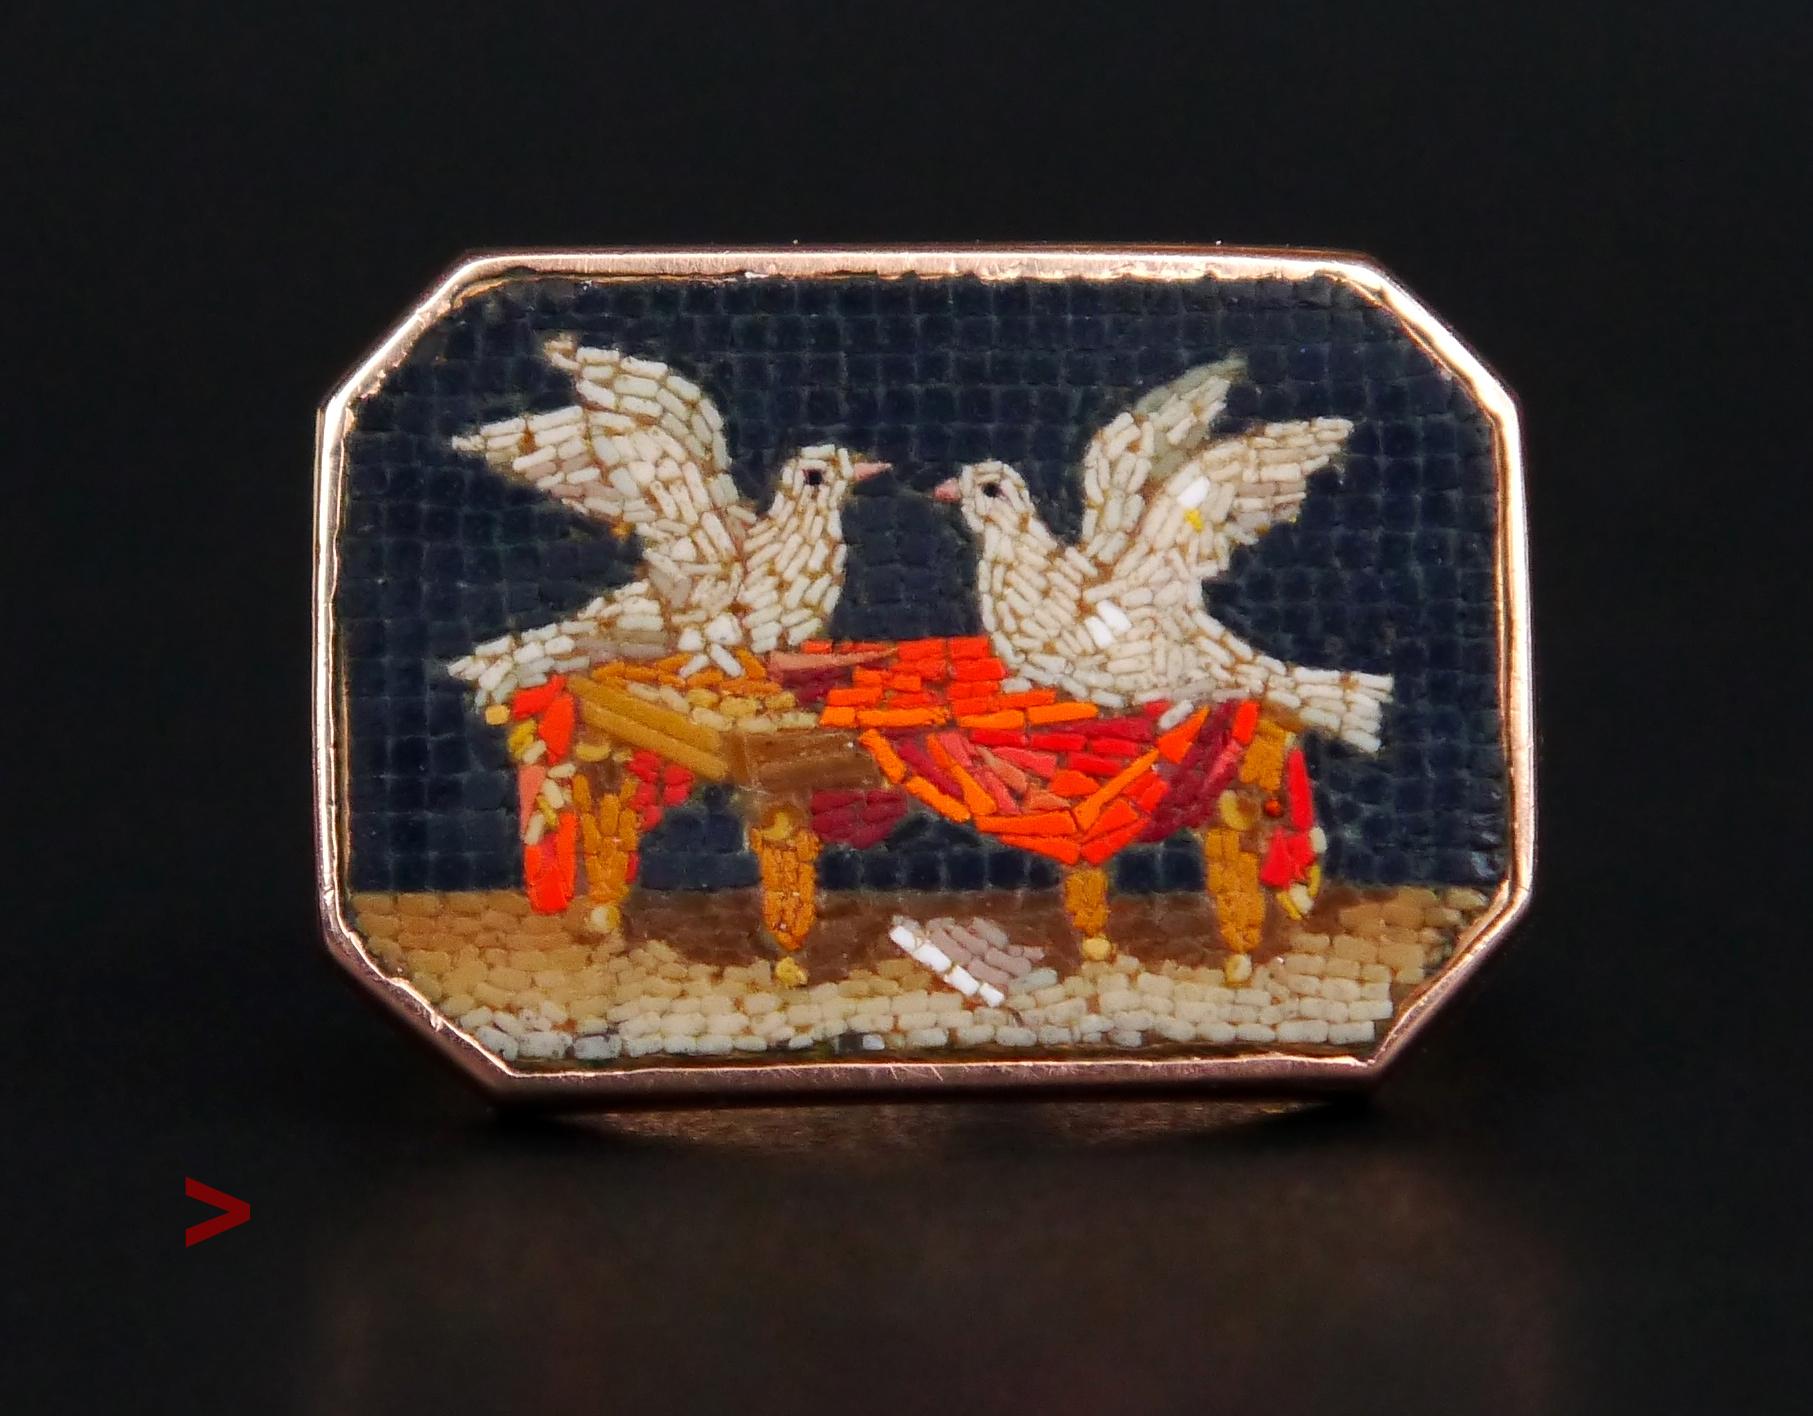 Wunderschöne alte italienische achteckige Mikromosaik-Szene von zwei Tauben, die in den Falten eines roten Mantels nisten.

Das Mosaik ist eingebettet in eine elegant geformte Fassung aus massivem 18-karätigem Roségold. Trueing ist die Form eines